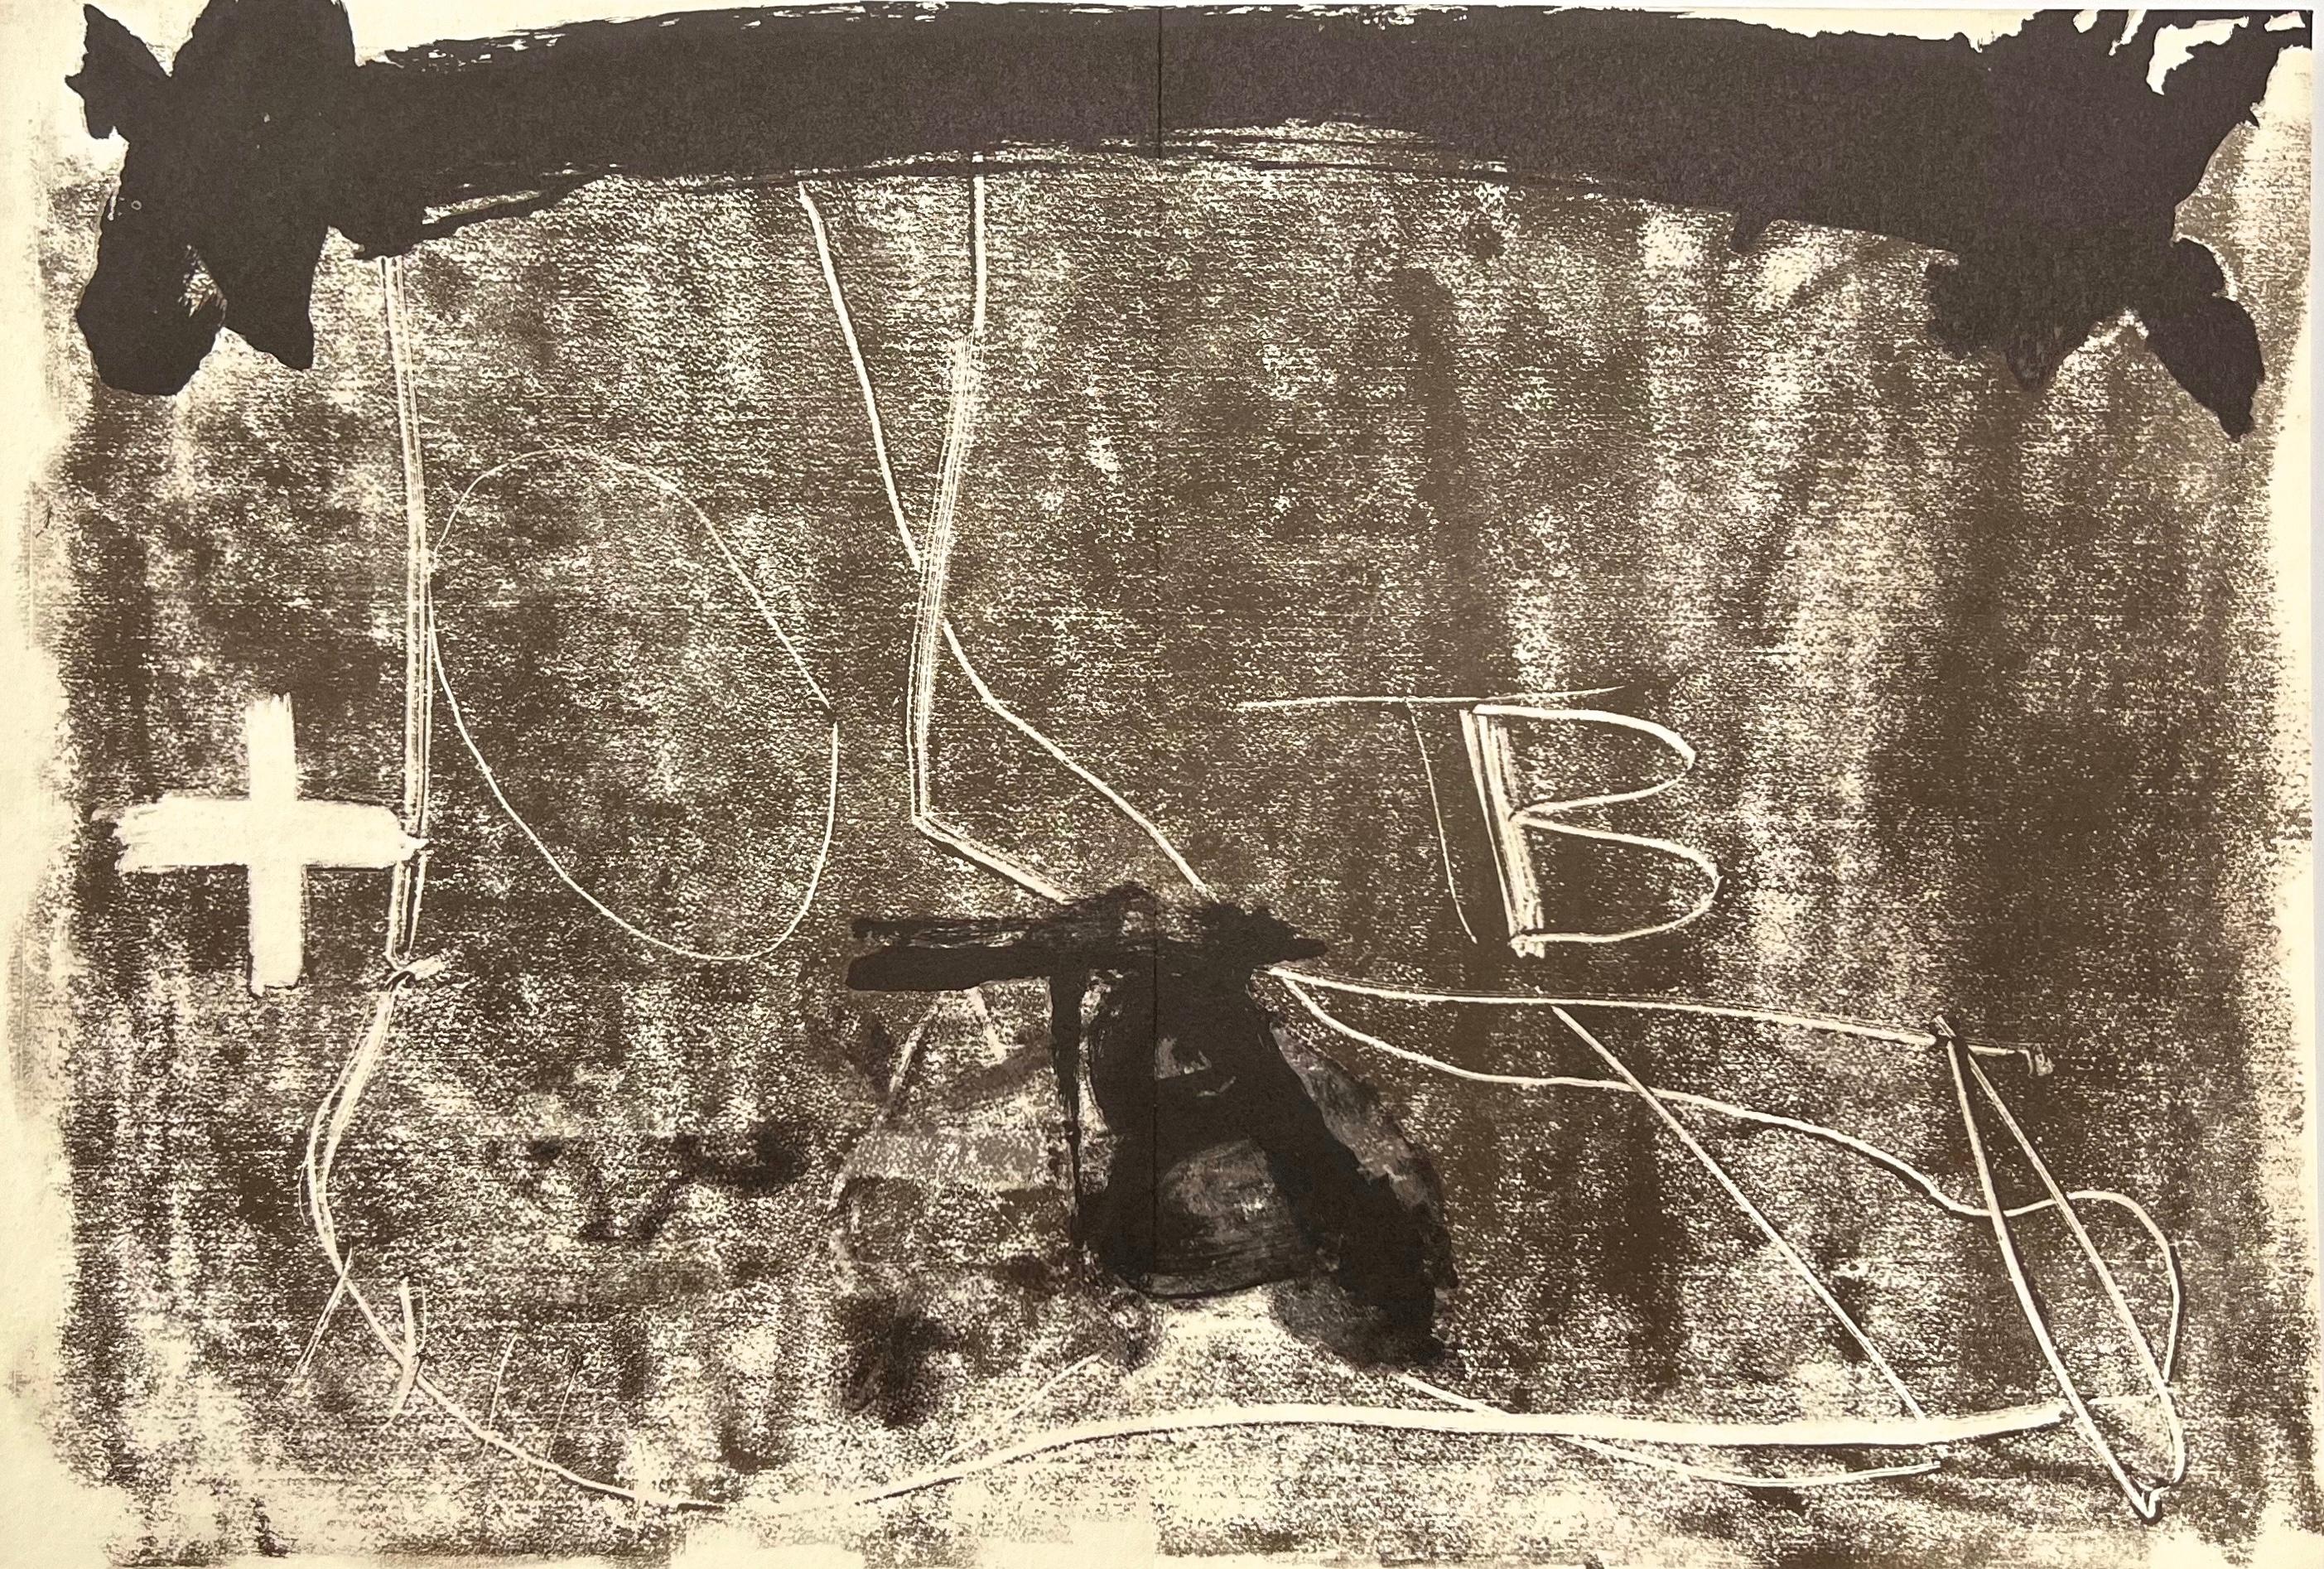 Antoni Tàpies Still-Life Print - Tàpies, Composition, Derrière le miroir (after)